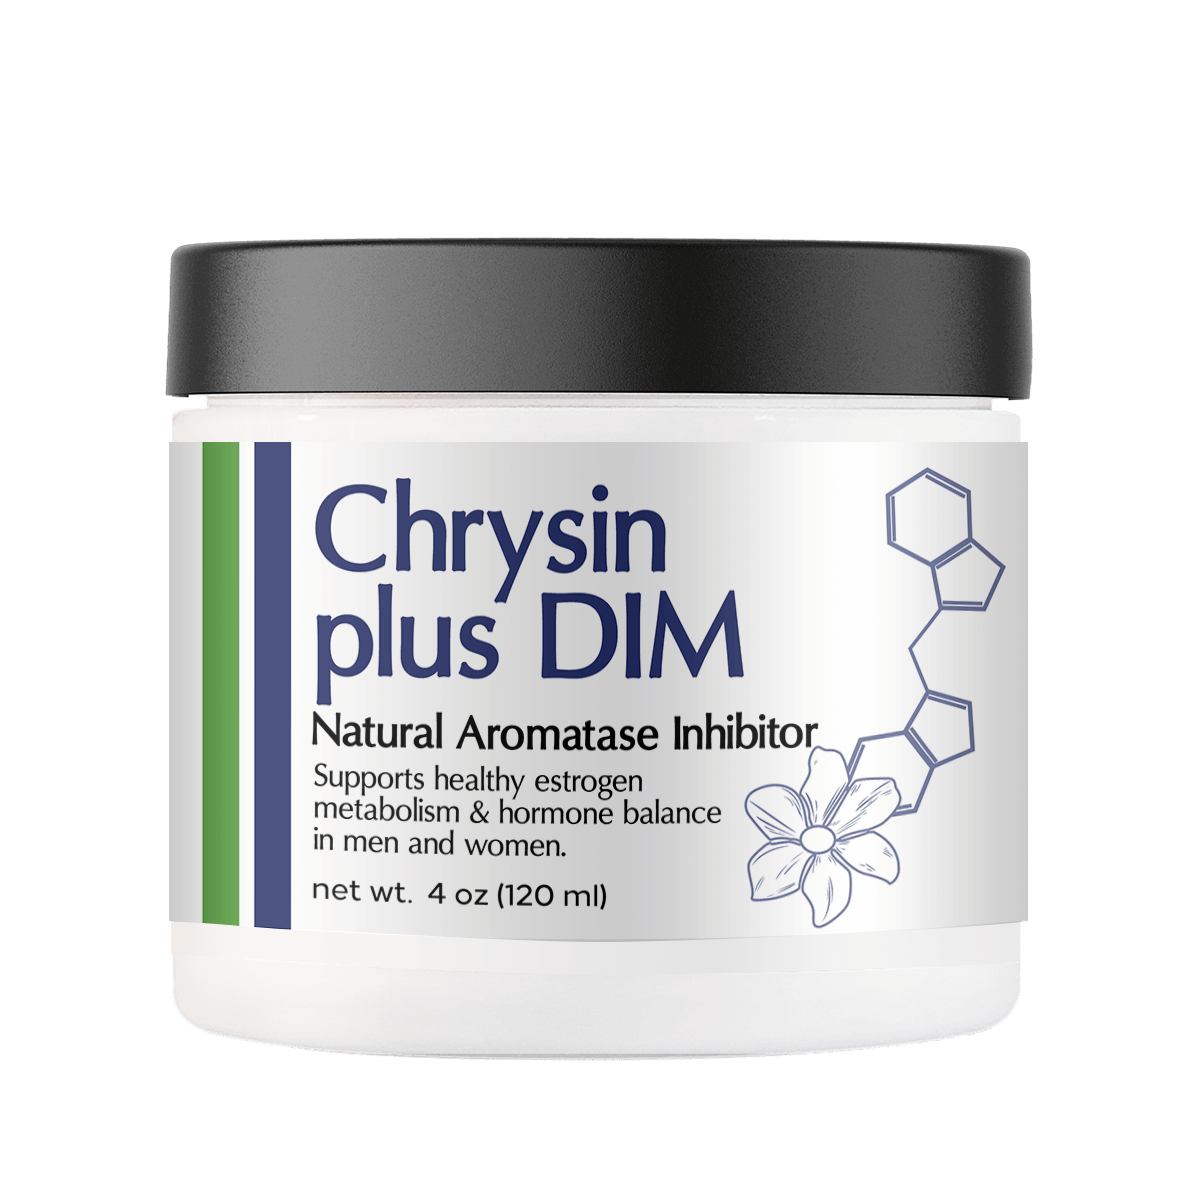 Chrysin Plus DIM 4oz Jar - Supports Healthy Estrogen